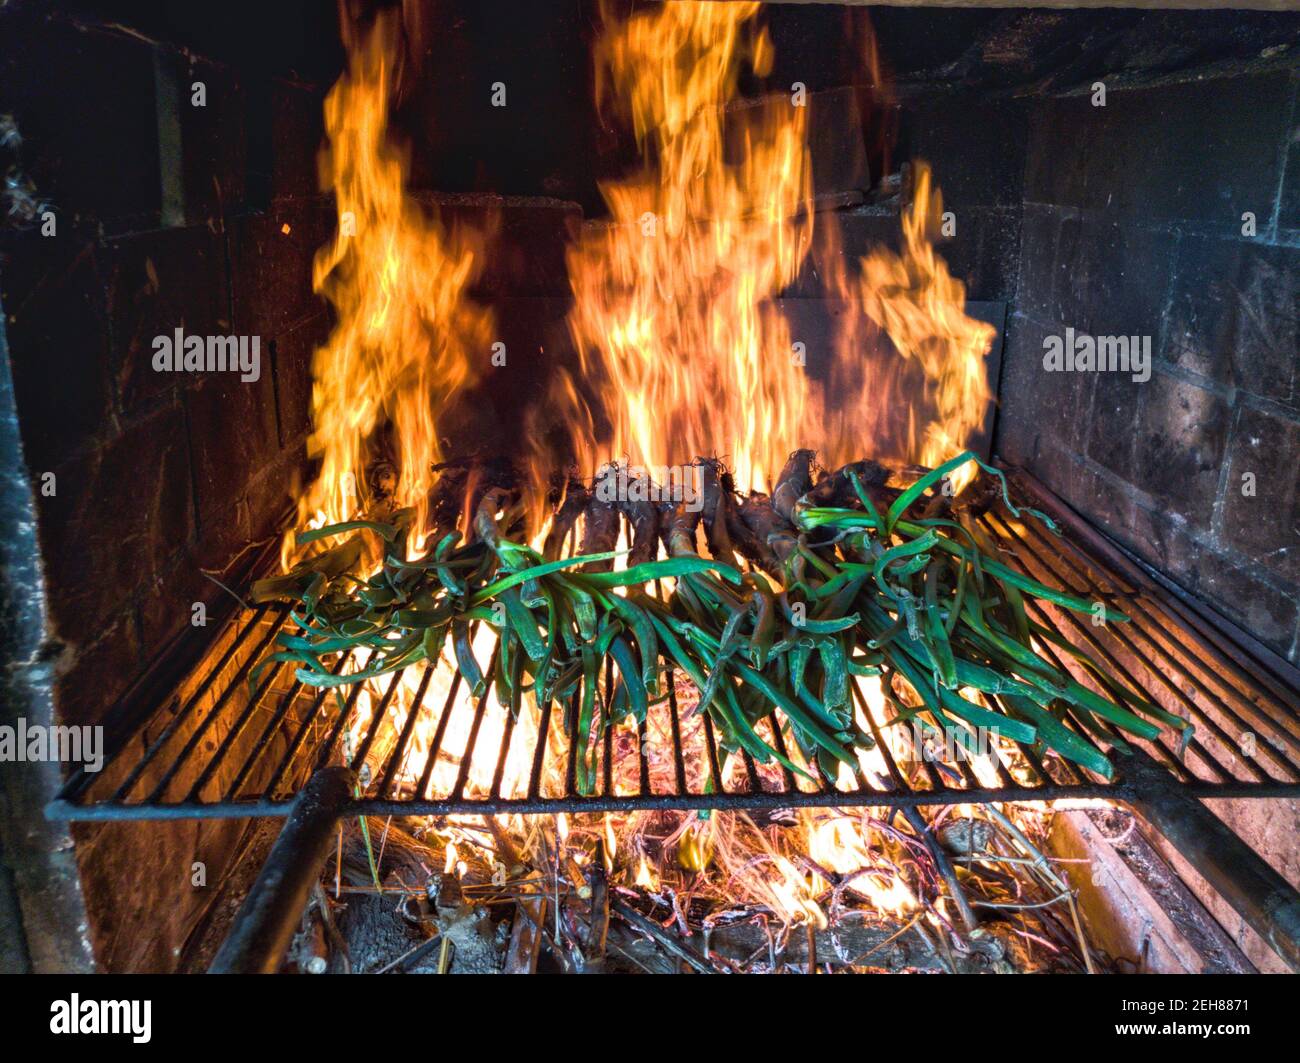 Feuer im Kamin mit calçots typìcal Essen von Valls Tarragona  Stockfotografie - Alamy